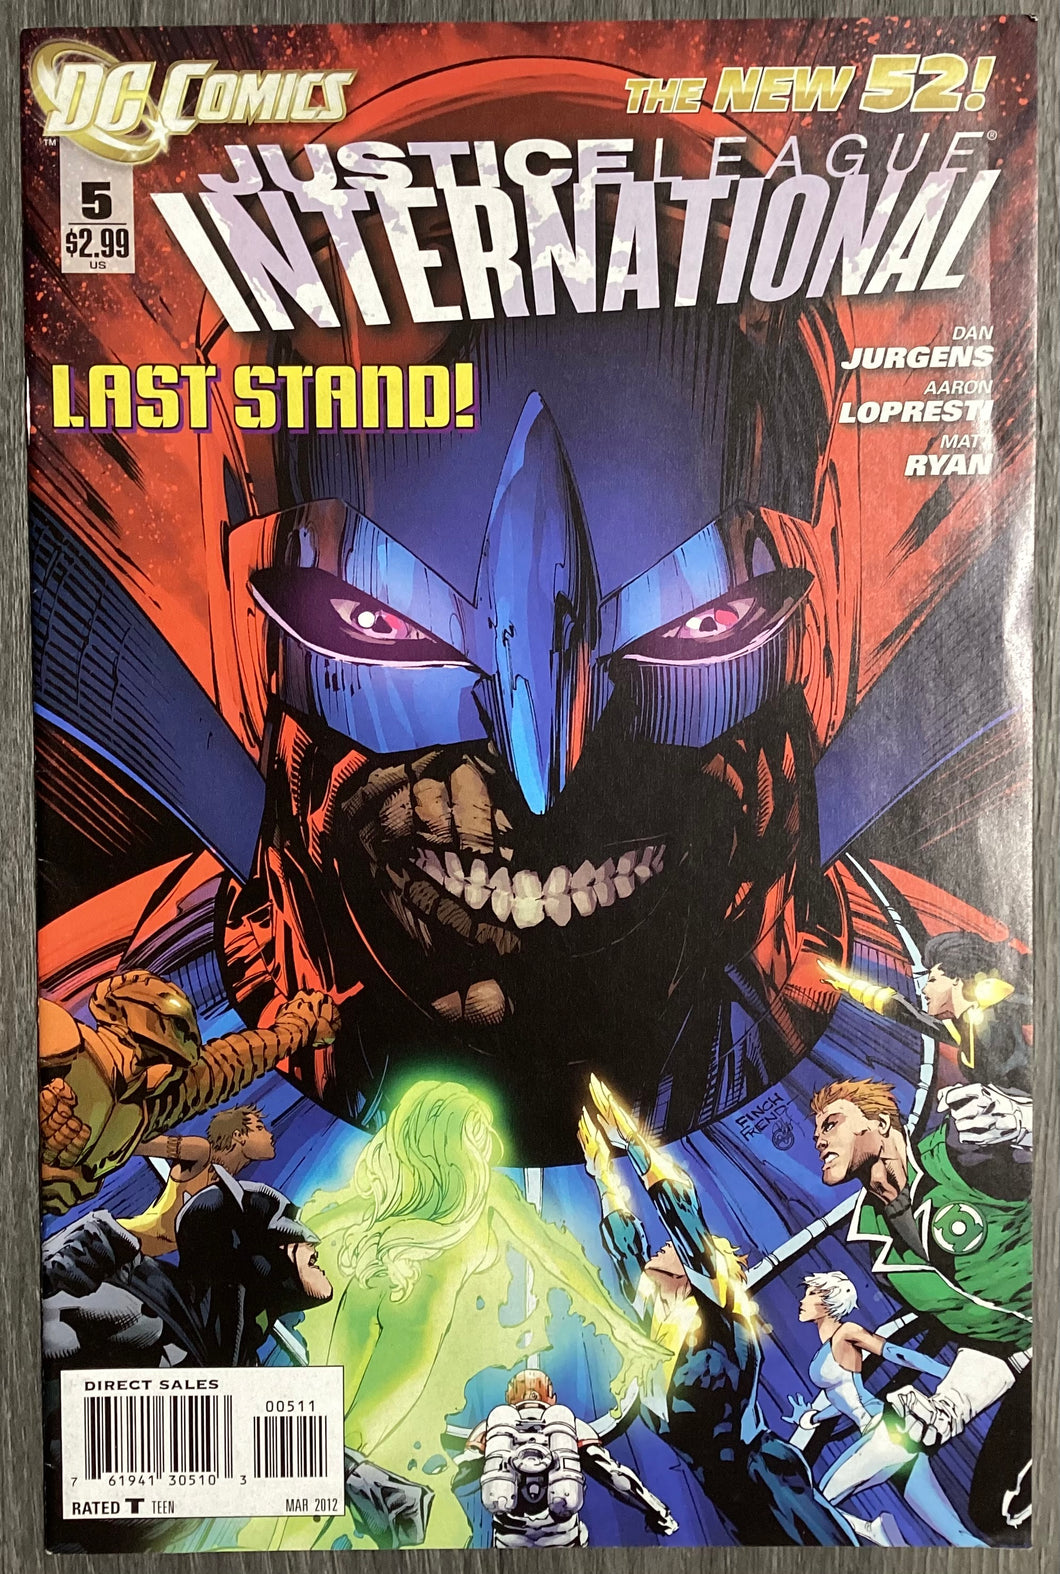 Justice League International (New 52) No. #5 2012 DC Comics